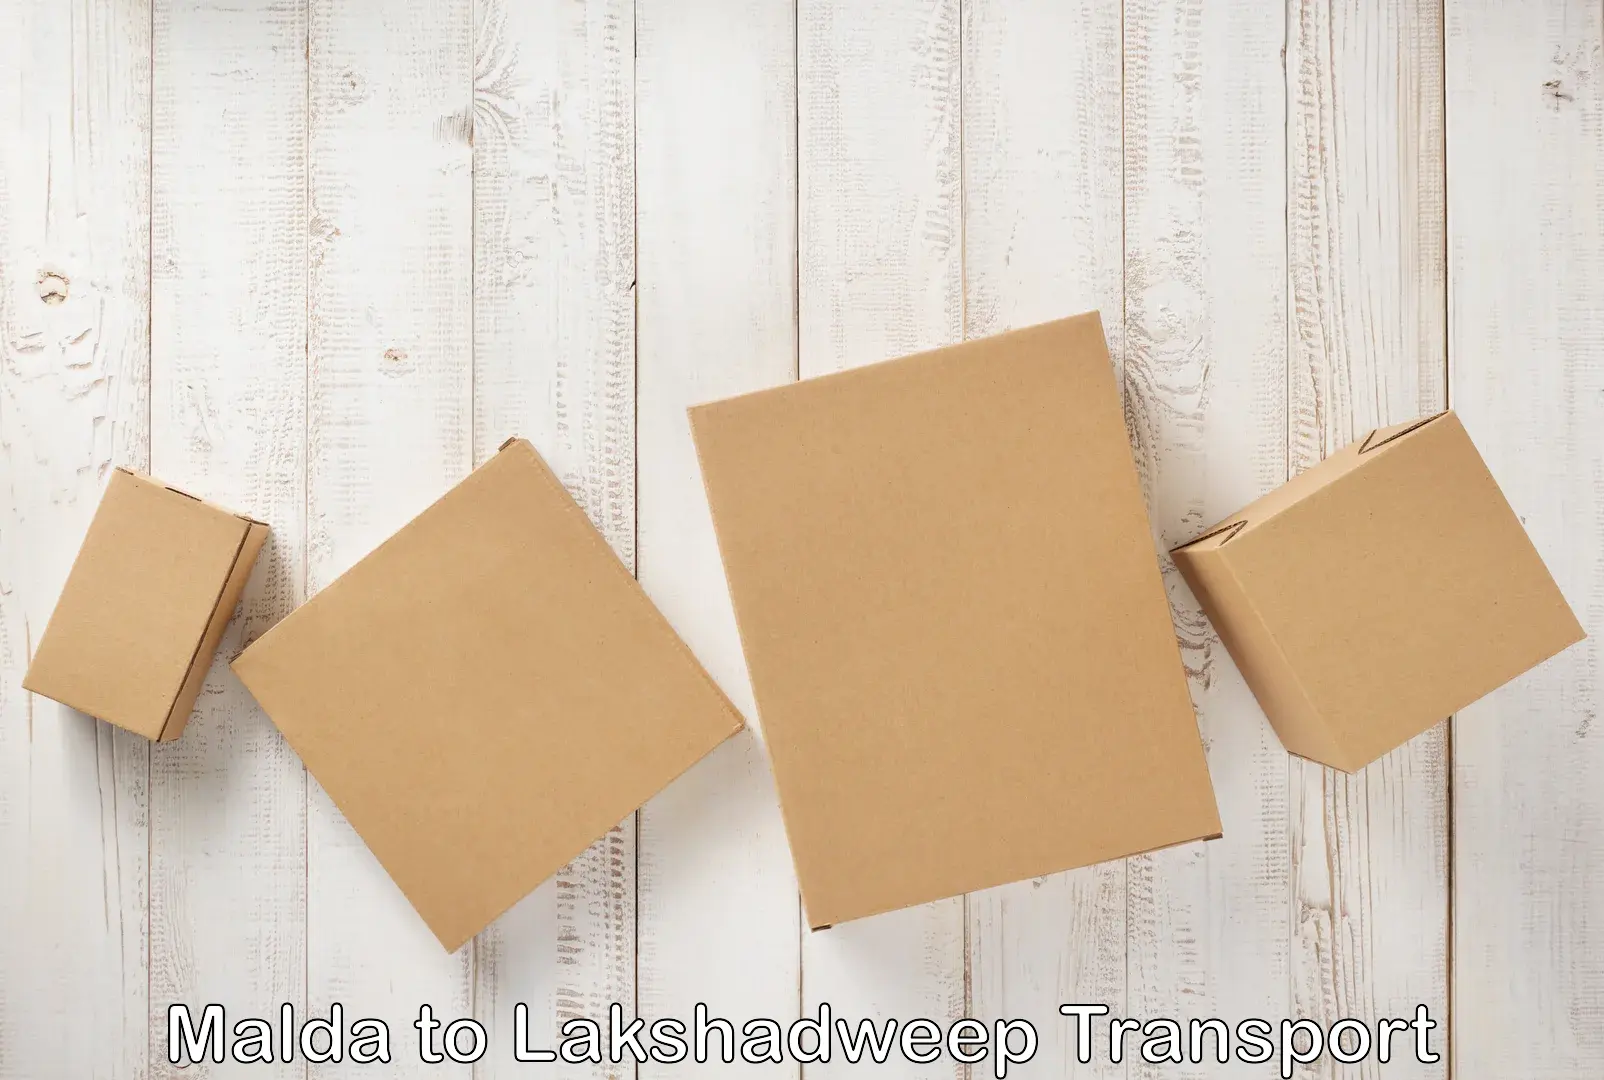 Furniture transport service Malda to Lakshadweep